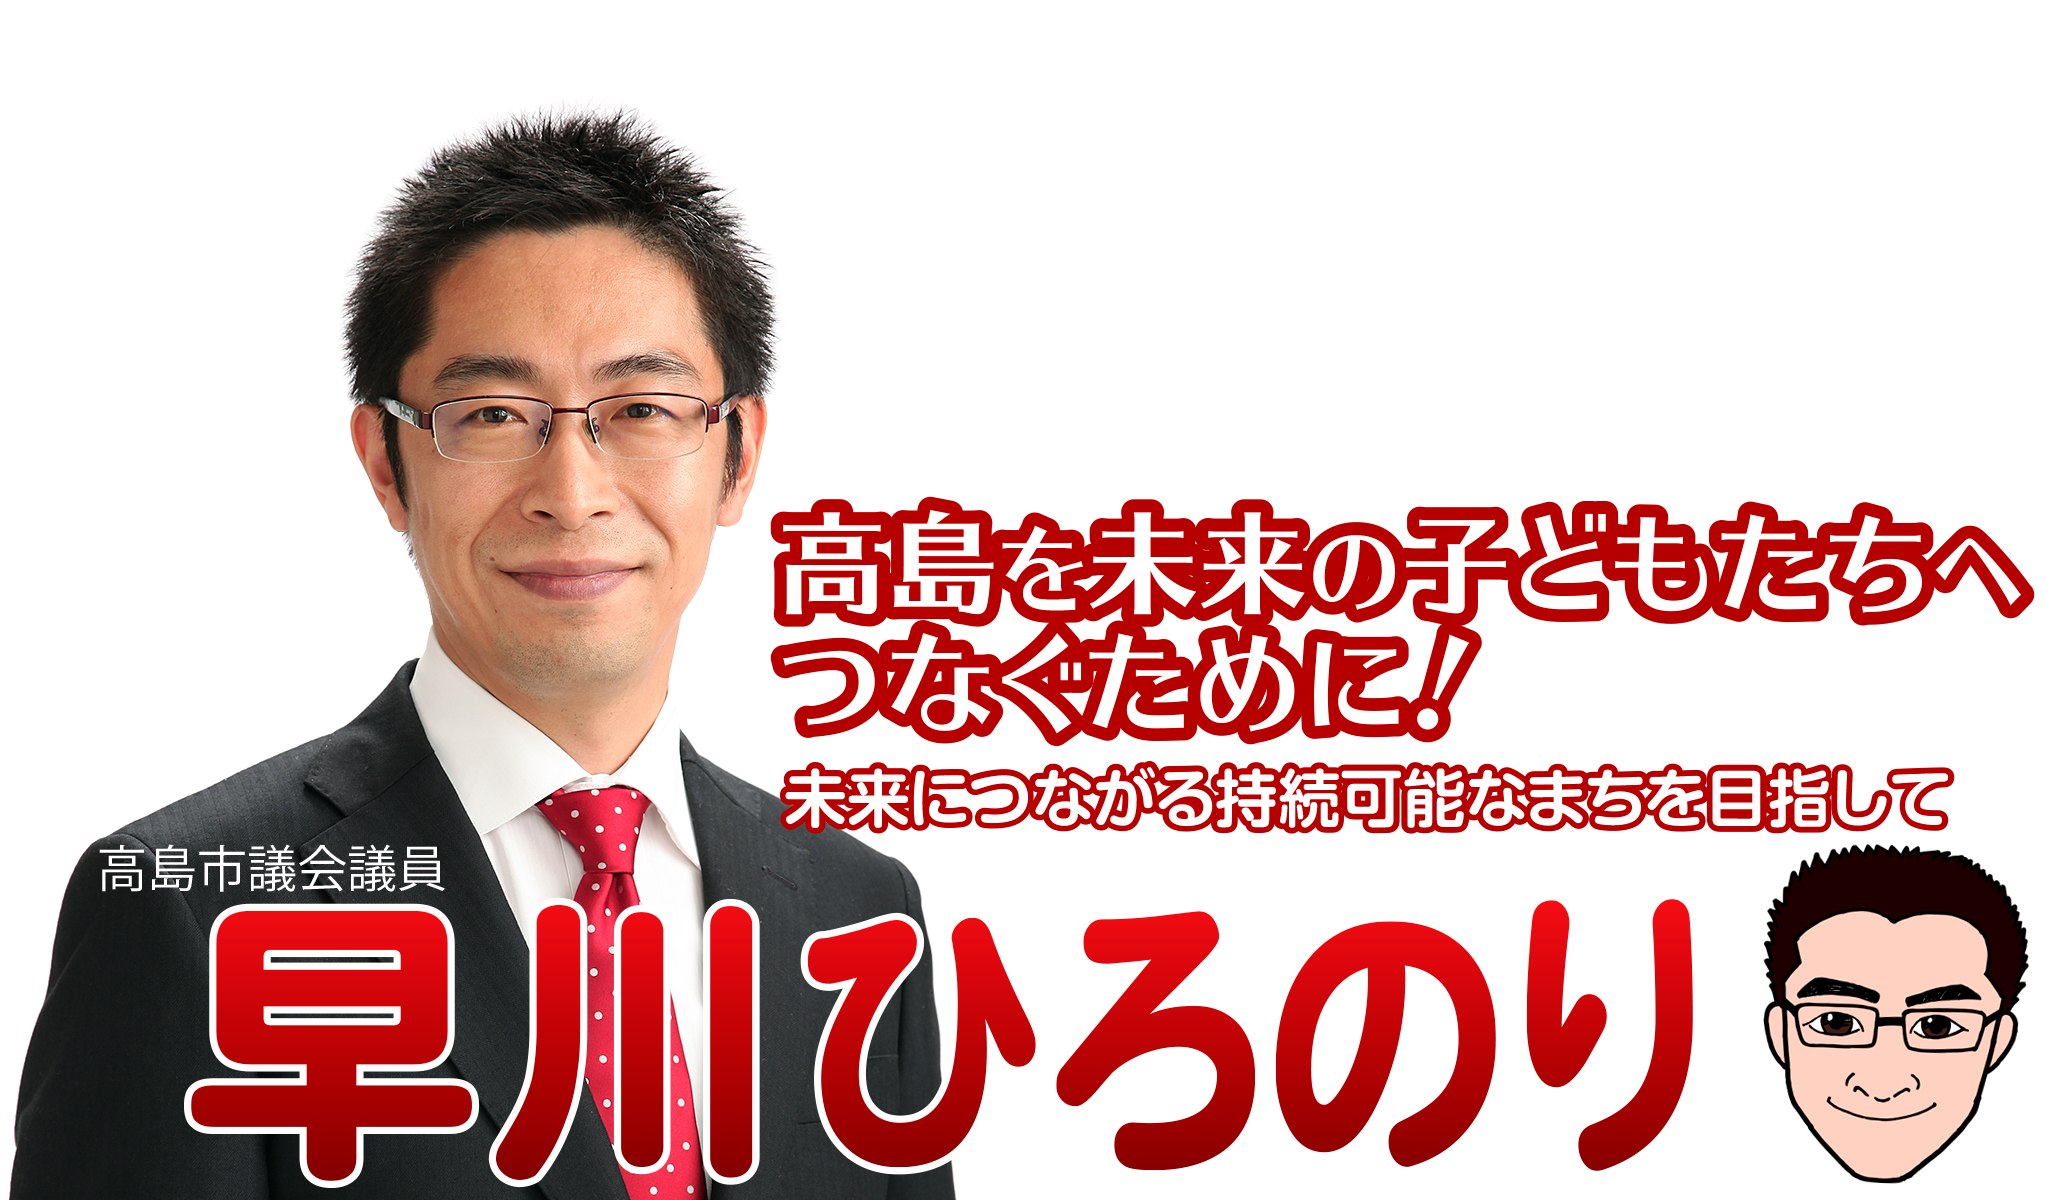 高島市議会議員「早川浩徳」高島を未来の子どもたちへつなぐために